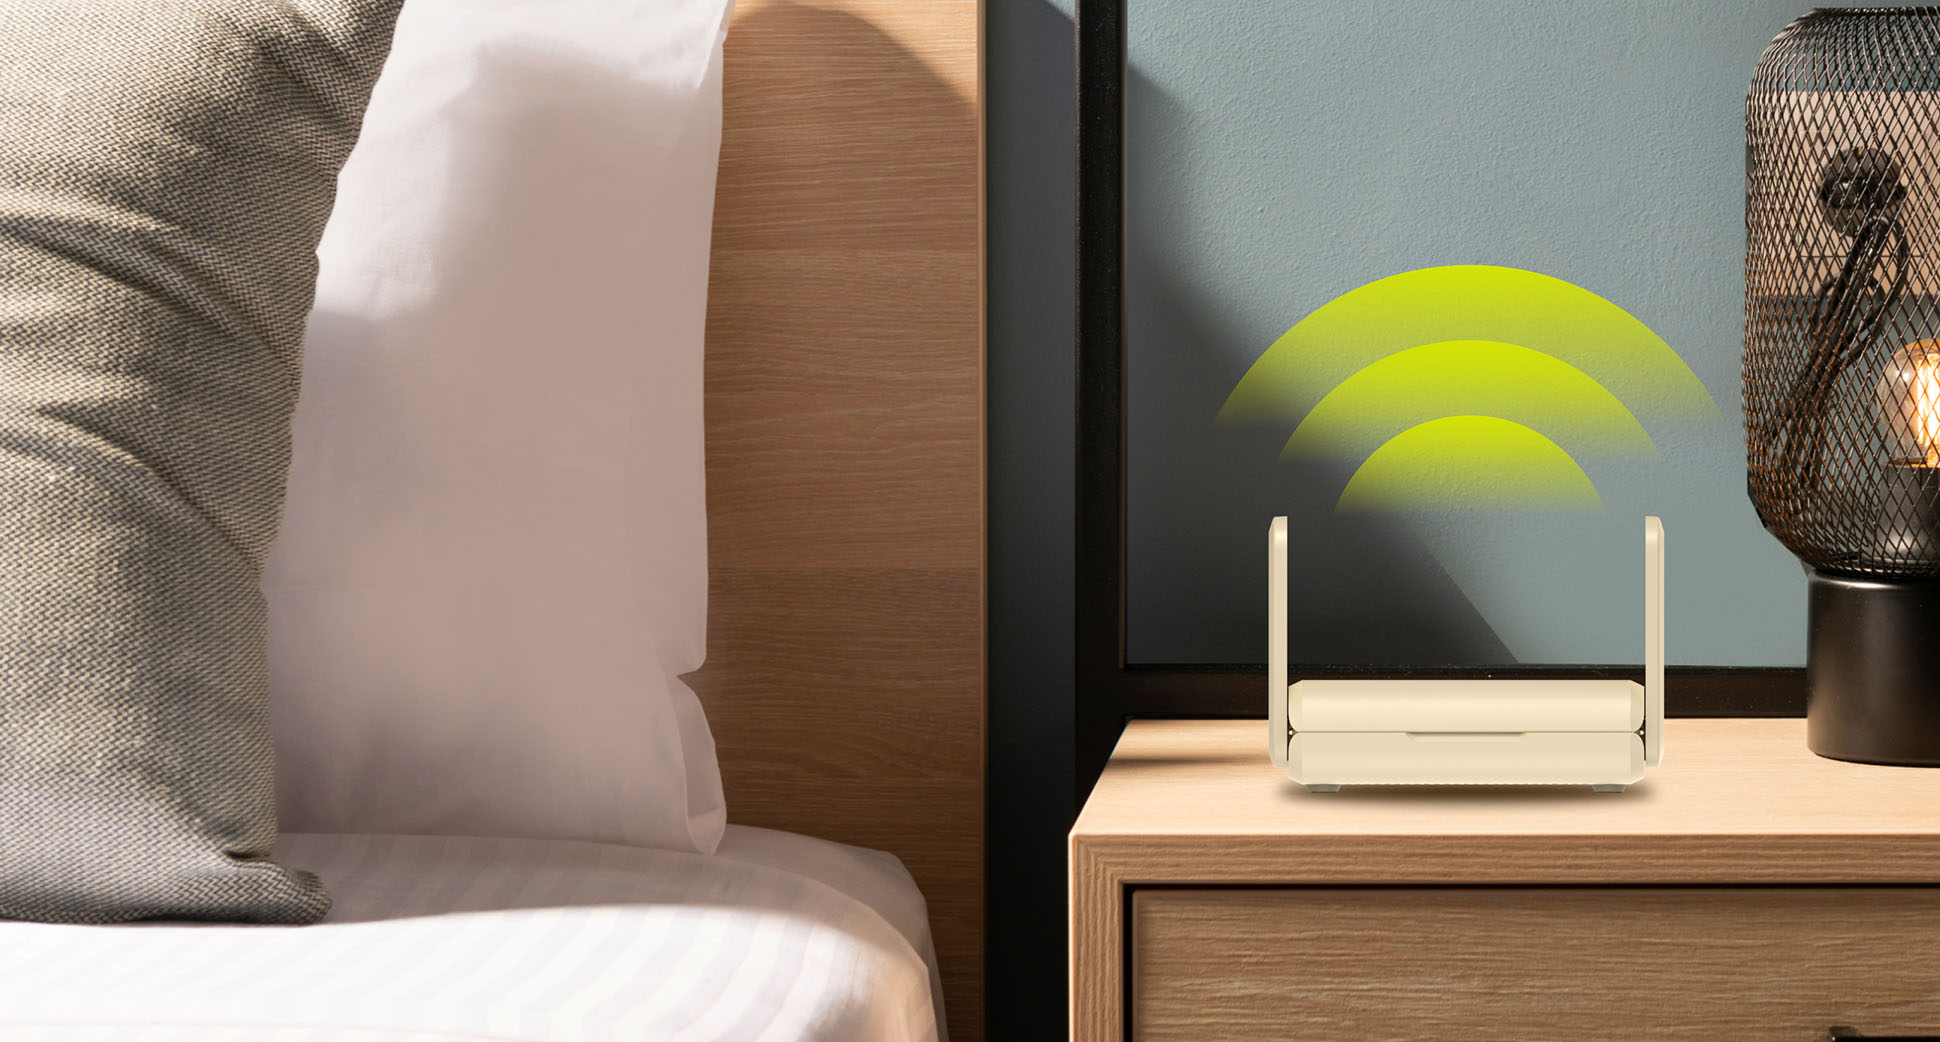 Aircove Go in a hotel room providing Wi-Fi